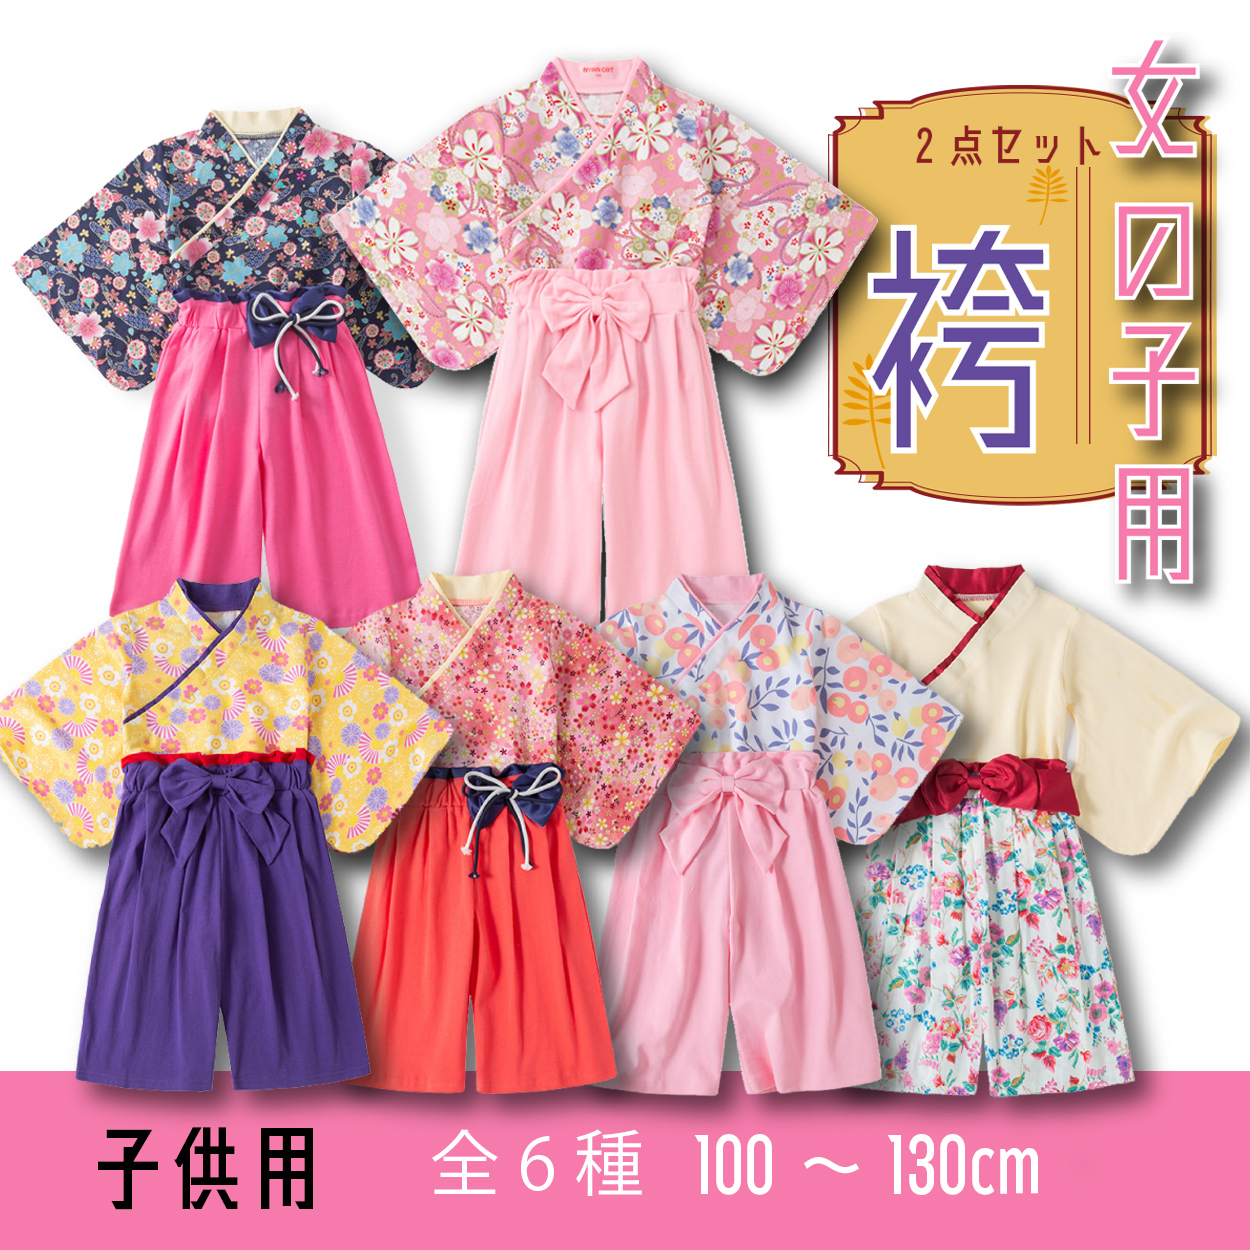 袴風セパレート☆花柄ピンク 130cm 女の子 和装 雛祭り - 和服